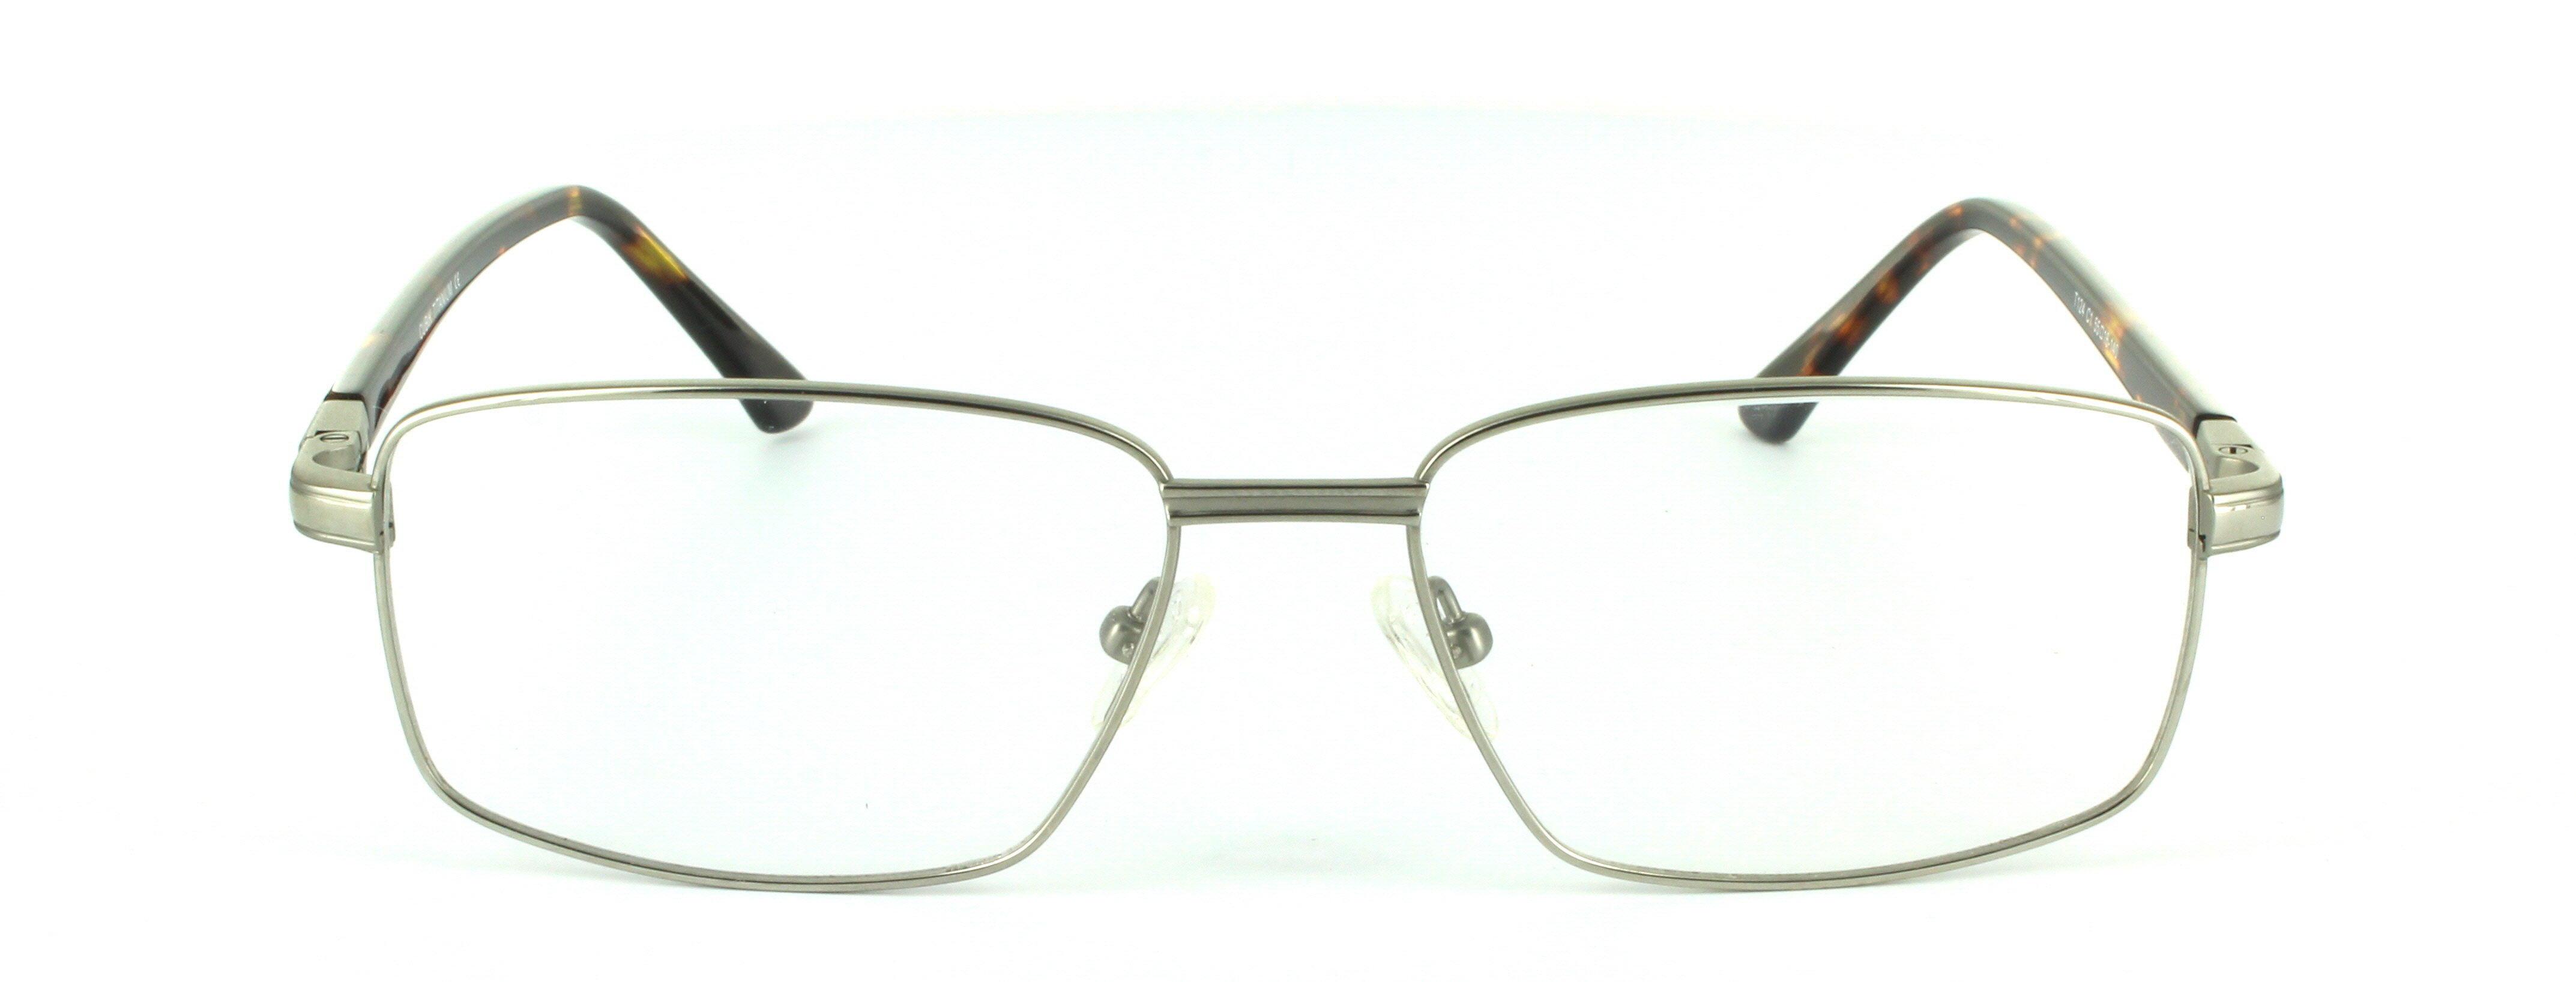 Silver Full Rim Rectangular Titanium Glasses Terry - Image View 4